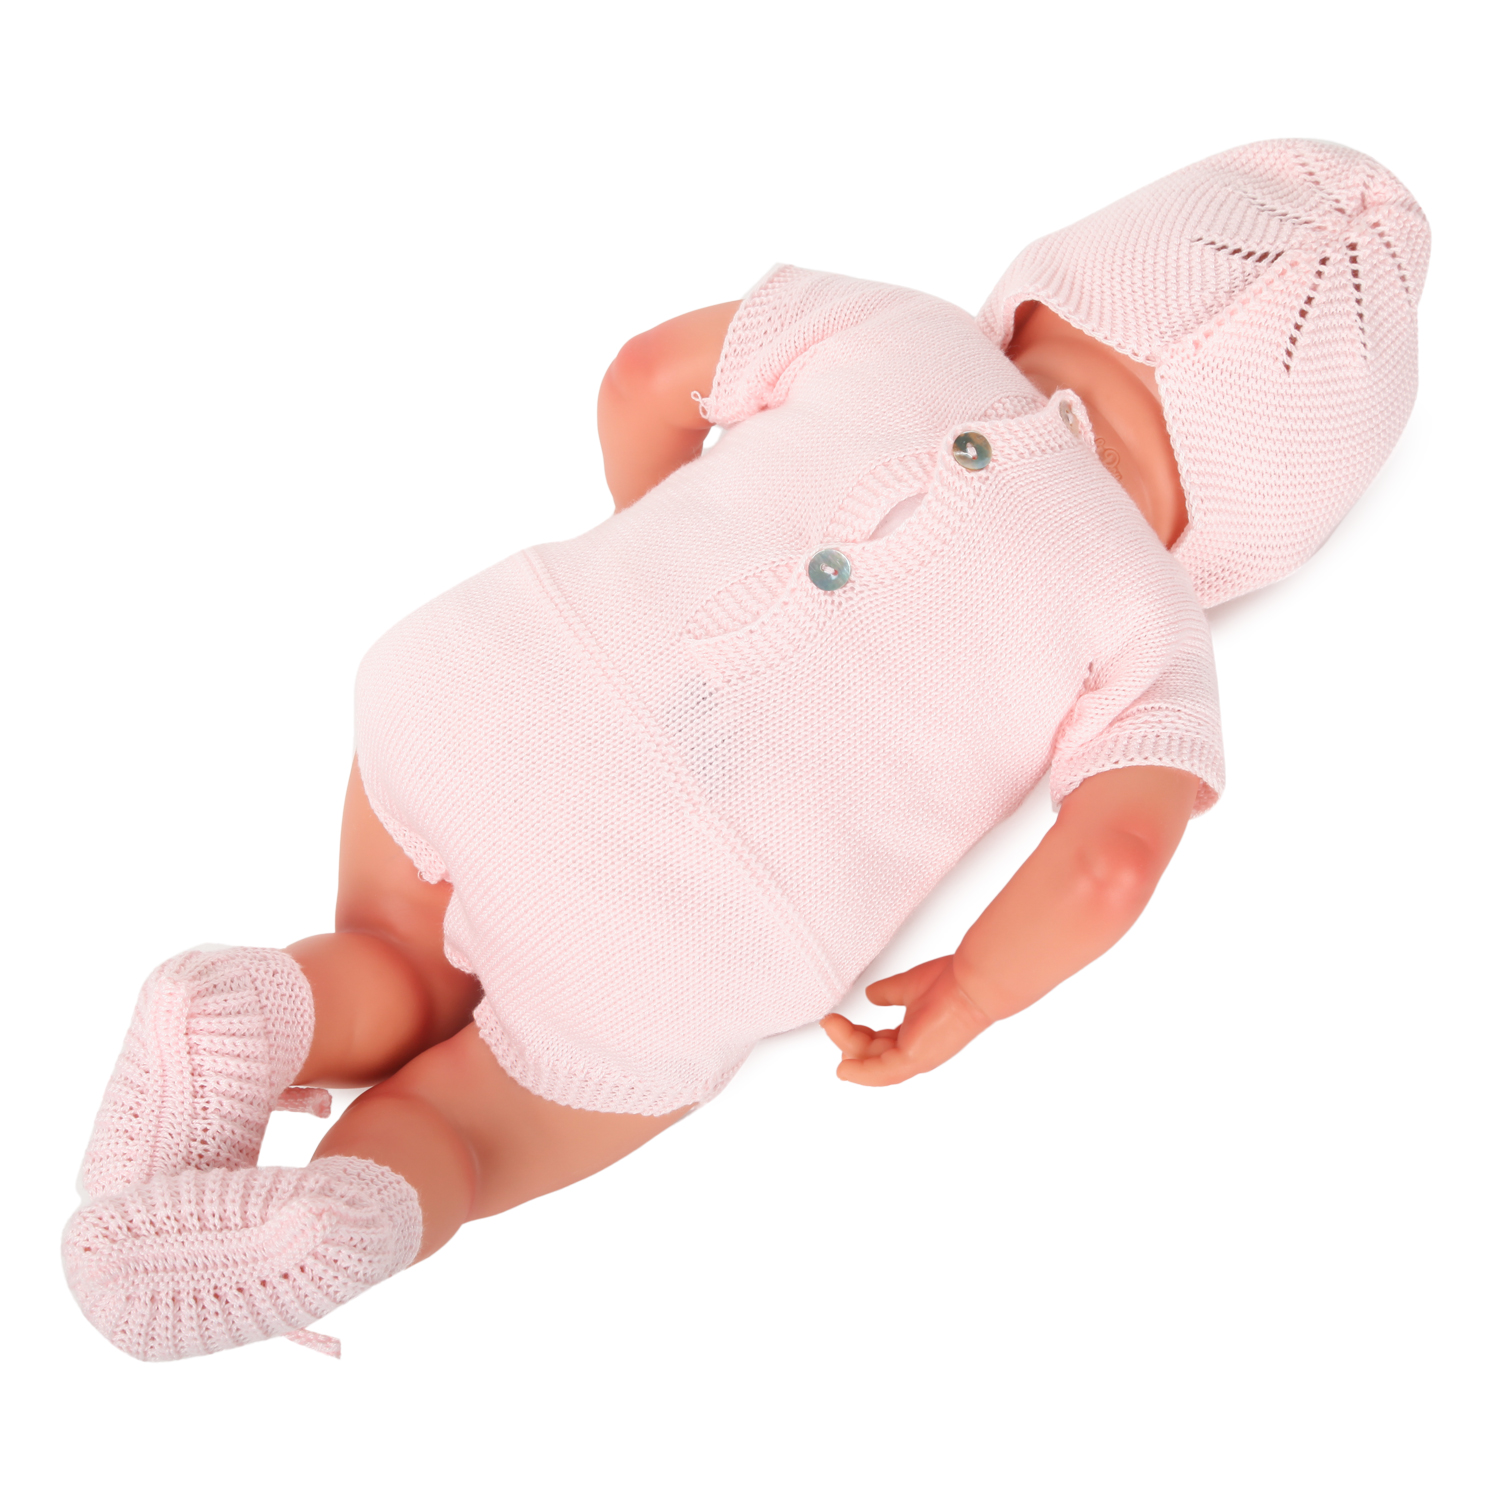 Пупс MARINA & PAU новорожденный в розовом боди 3040 3040 - фото 5